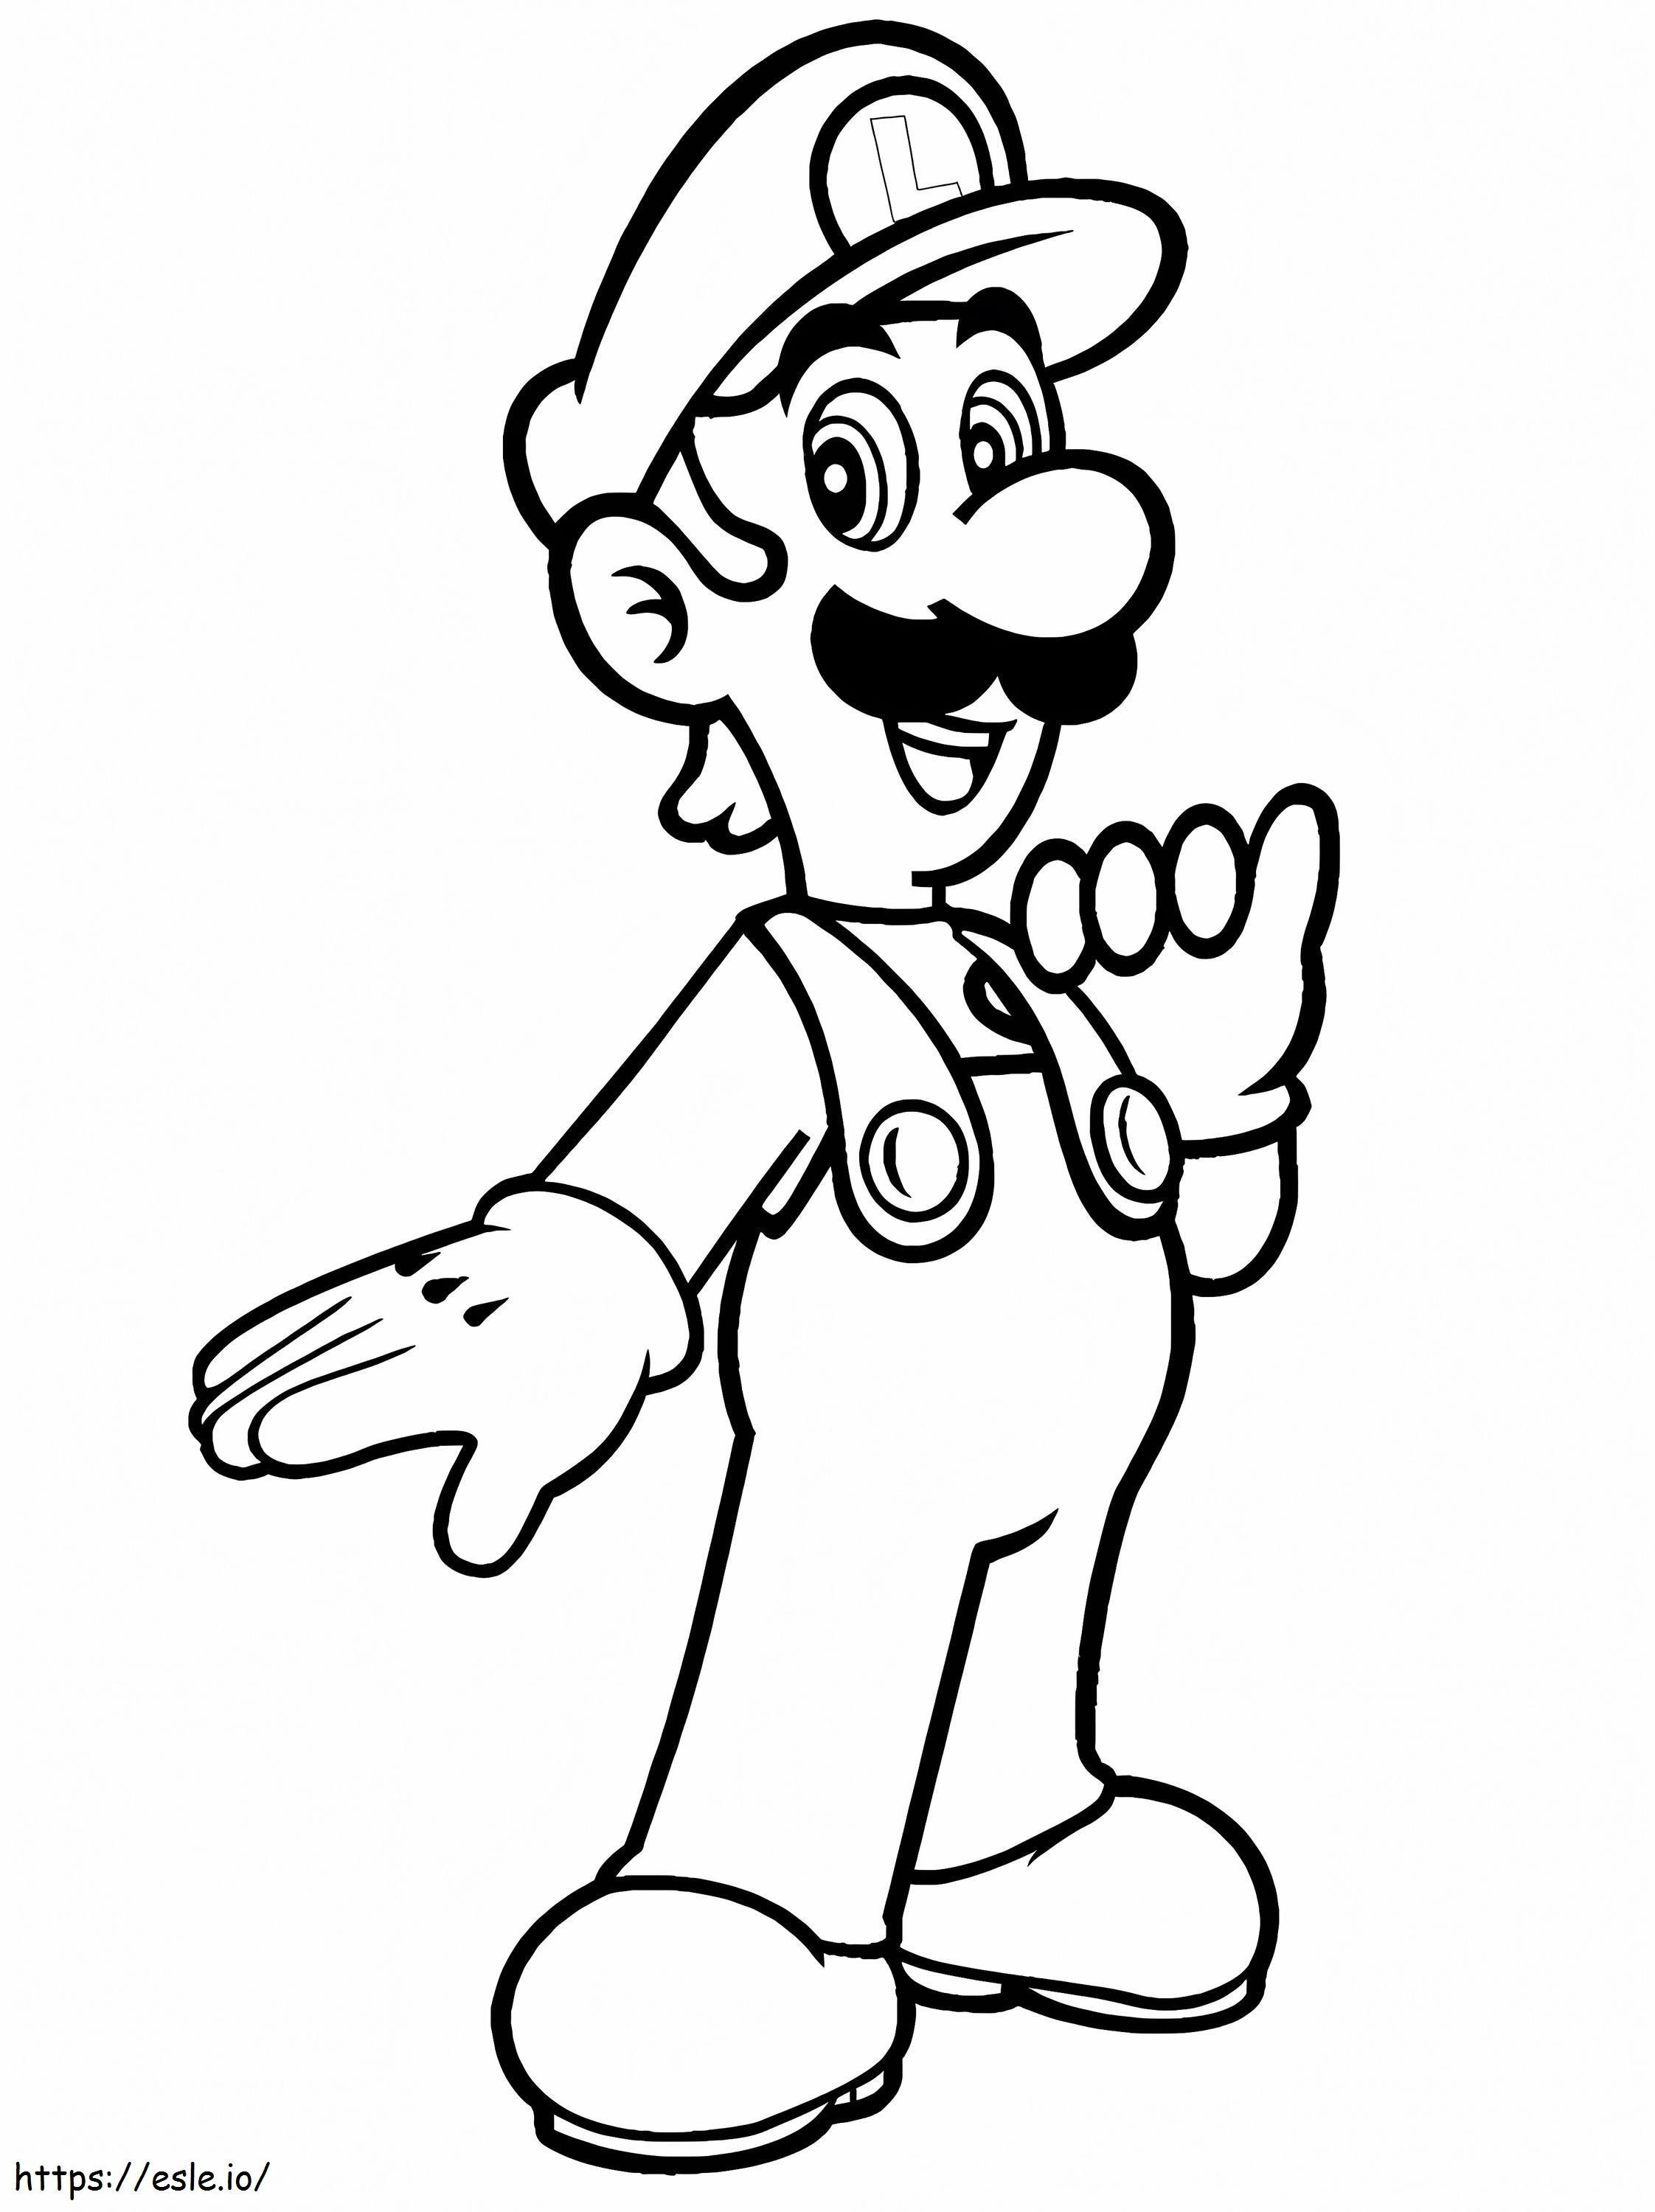 Louis De Super Mario 1 coloring page